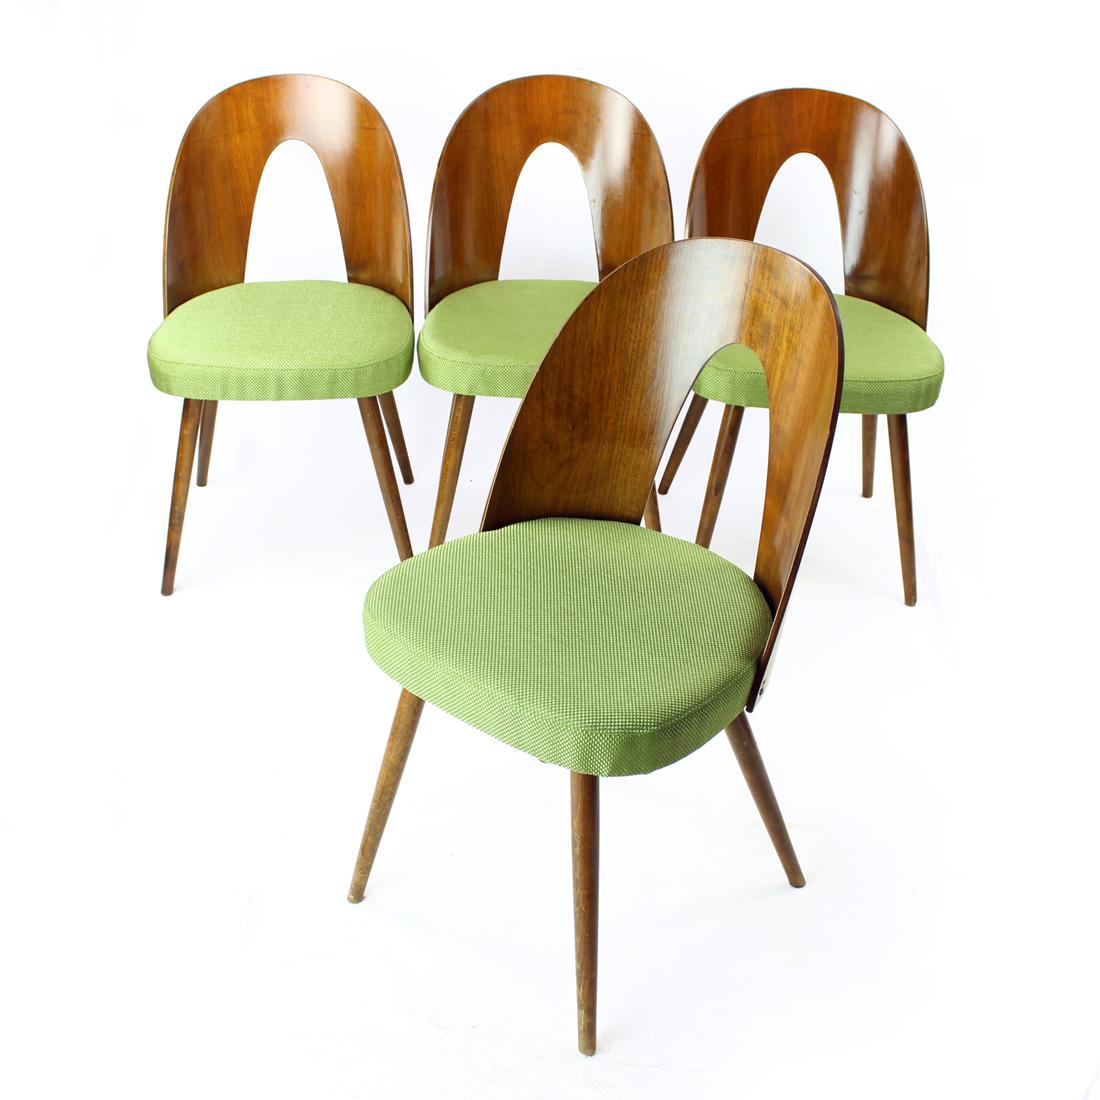 Magnifiques chaises de salle à manger produites par la société Tatra en Tchécoslovaquie dans les années 1960. Les chaises ont été conçues par Antonin Šuman. Ce magnifique ensemble est plaqué en noyer foncé sur le dossier en bois courbé. Le bois est